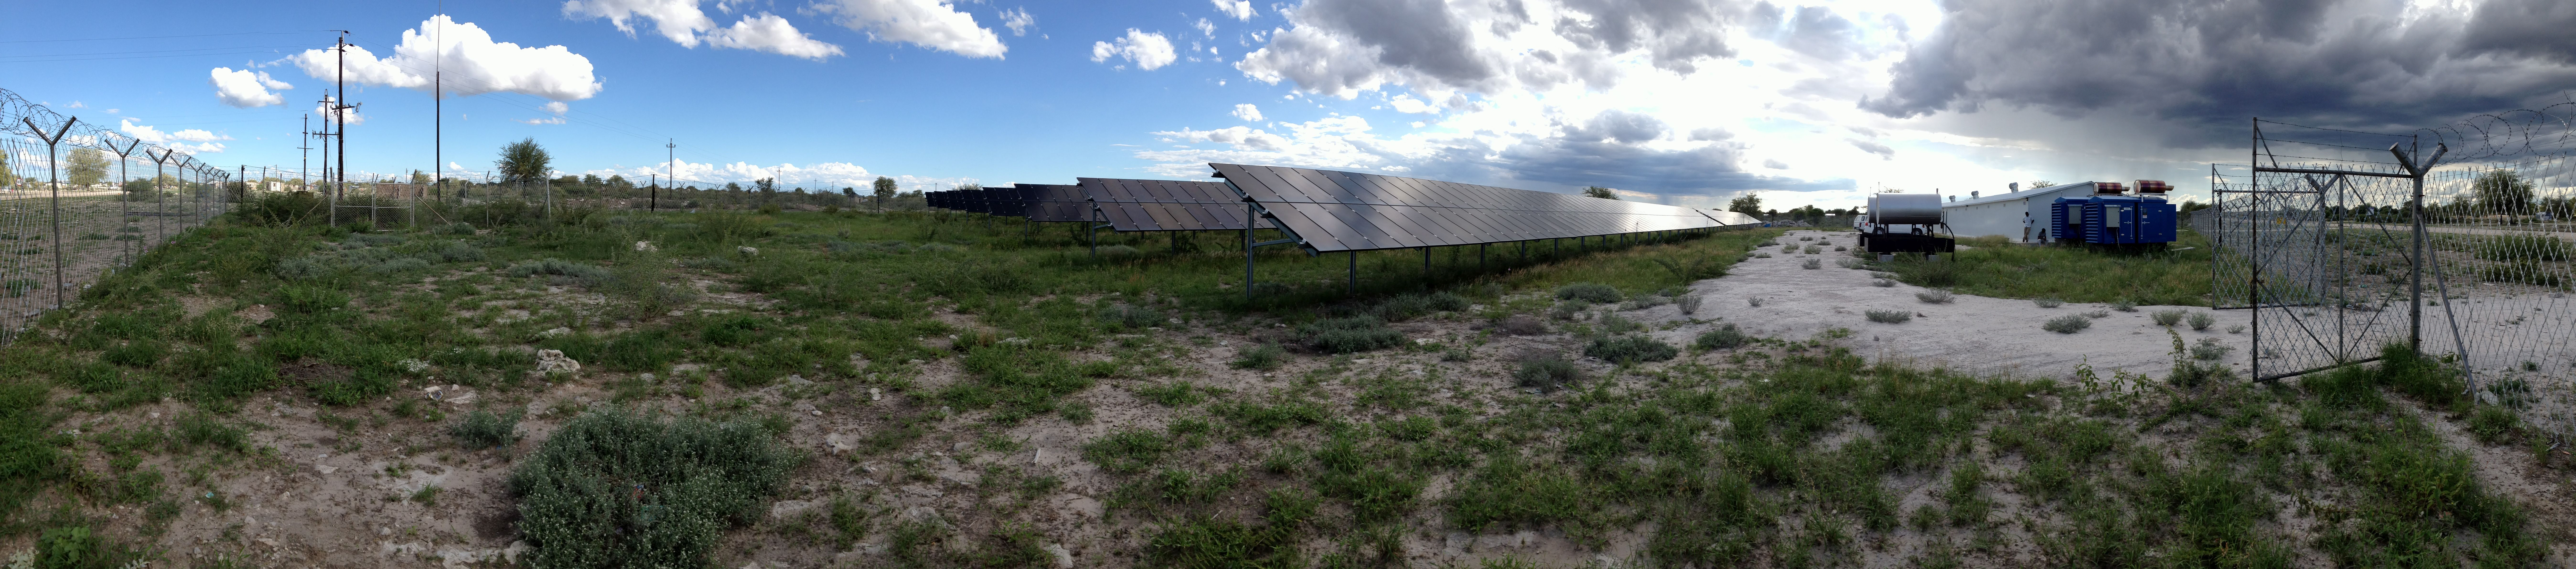 Die Photovoltaik-Anlage in Gam in der Region Otjozondjupa im Nordosten von Namibia ist das derzeit größte netzferne Hybrid-Energiesystem des Landes. © Fabian Junker, THI